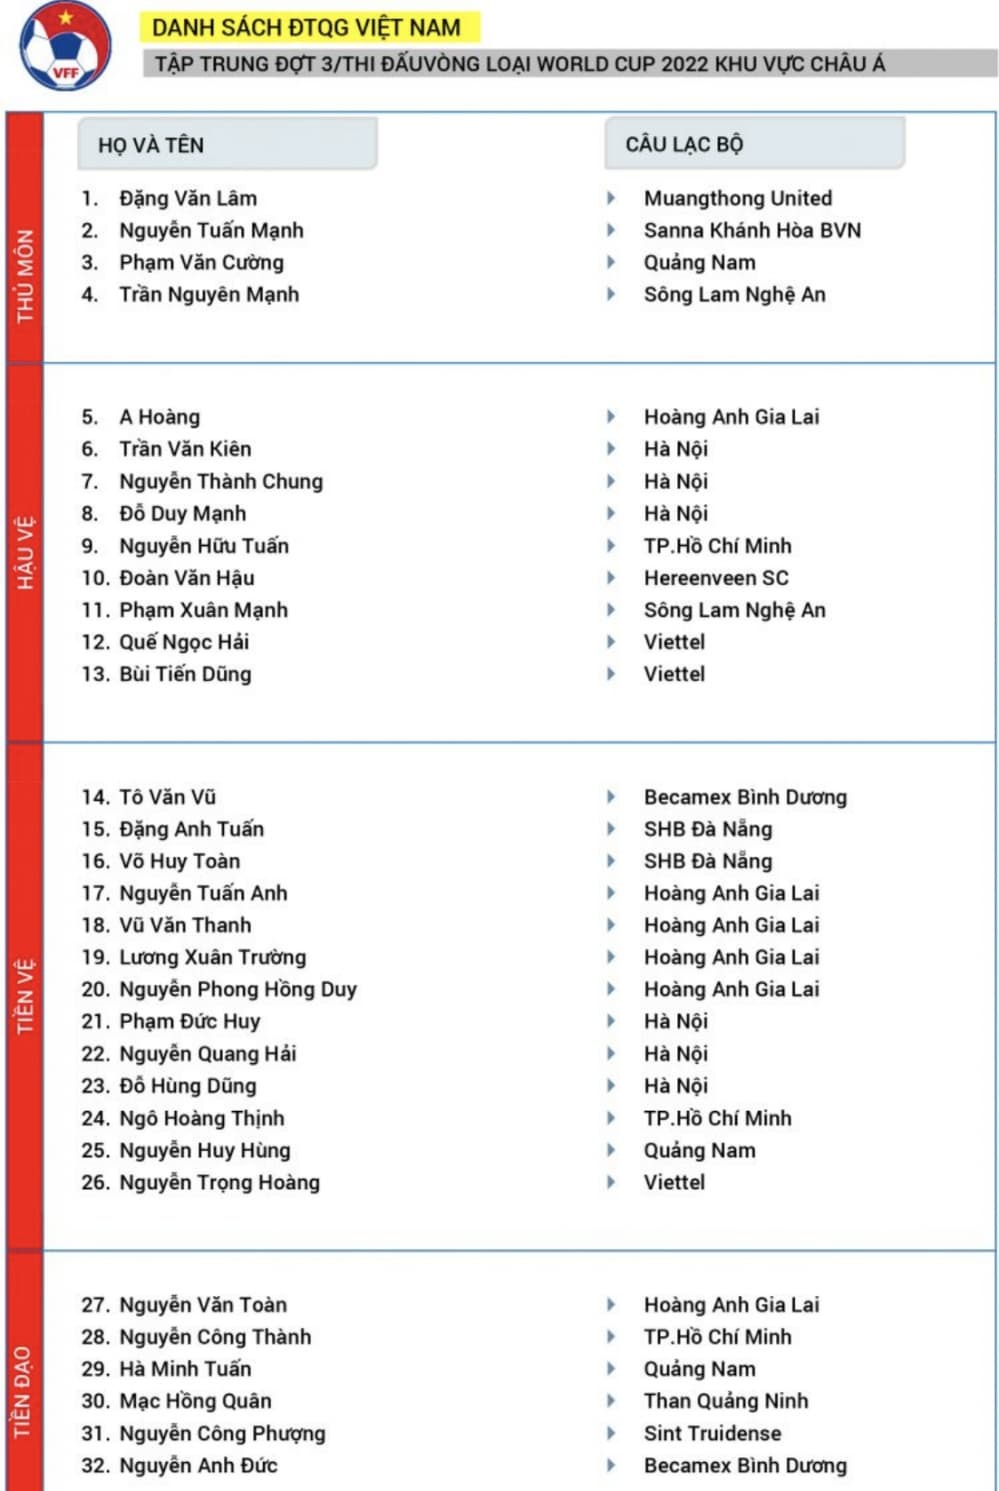  
Danh sách tuyển Việt Nam tập huấn đợt này.